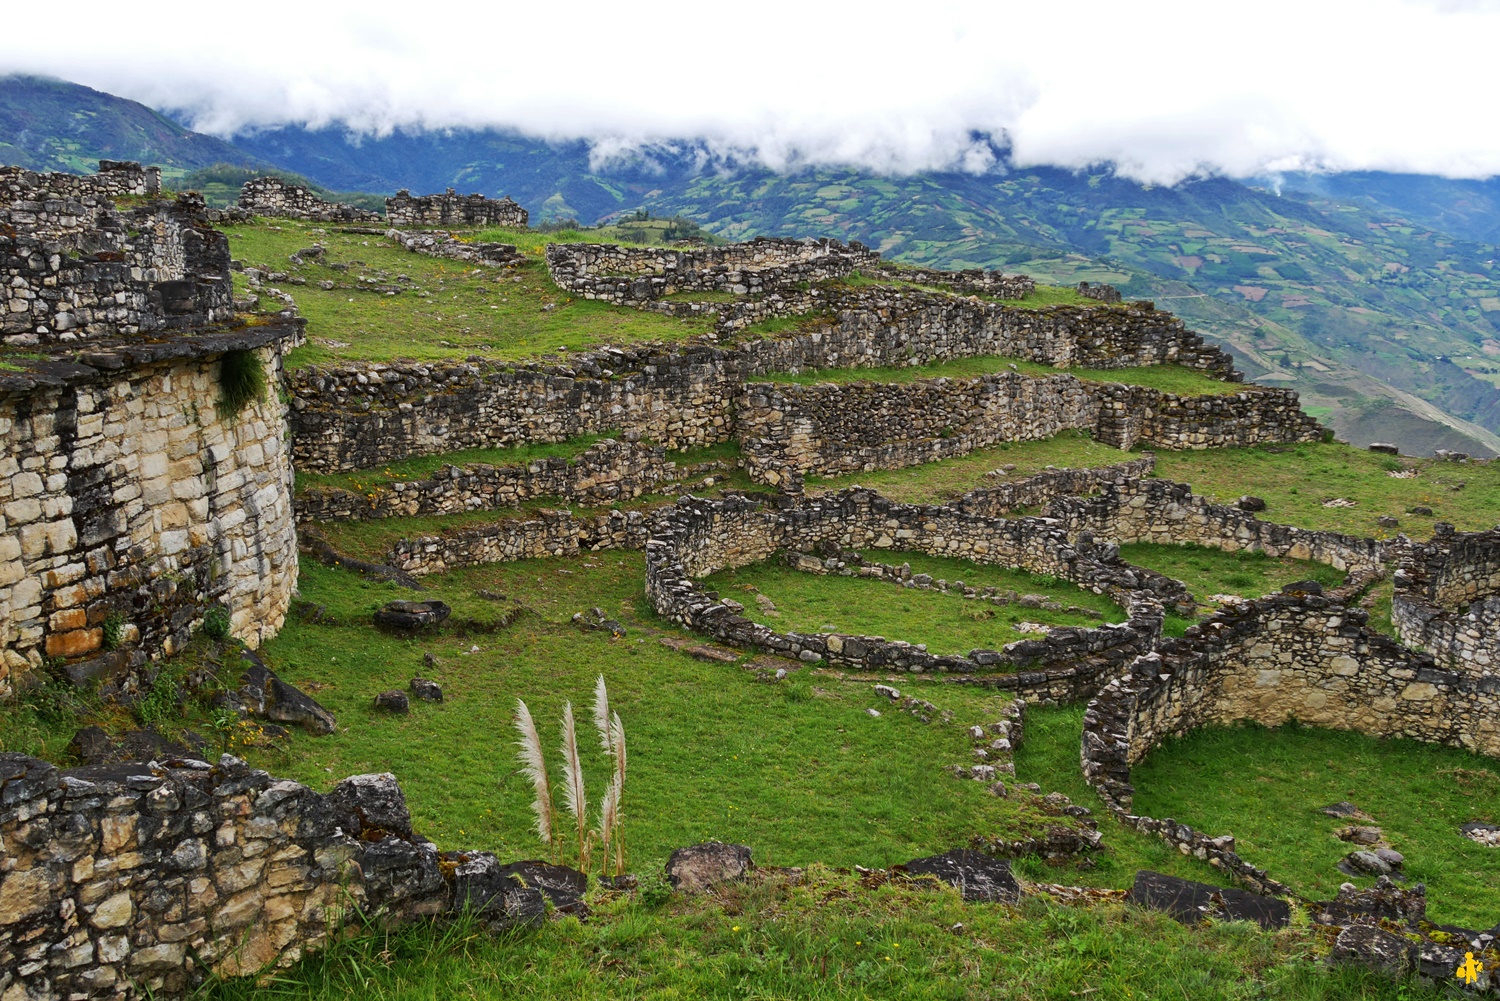 Road trip 4X4 Pérou en famille itinéraire bilan et budget | Blog VOYAGES ET ENFANTS